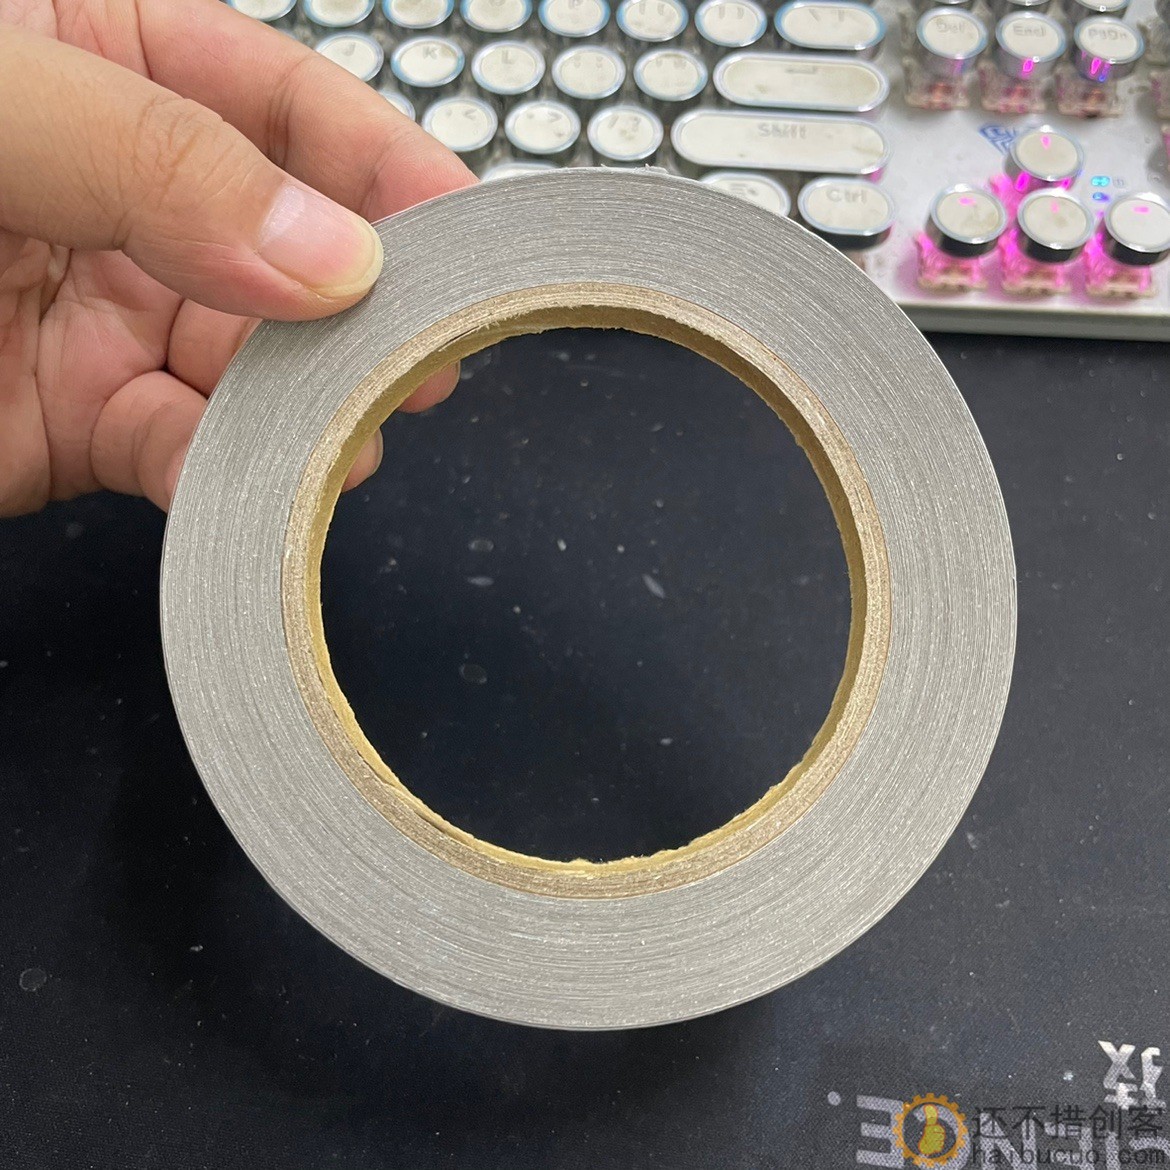 金属屏蔽胶带 1cm宽 最少50m长 粘性强 diy研究价